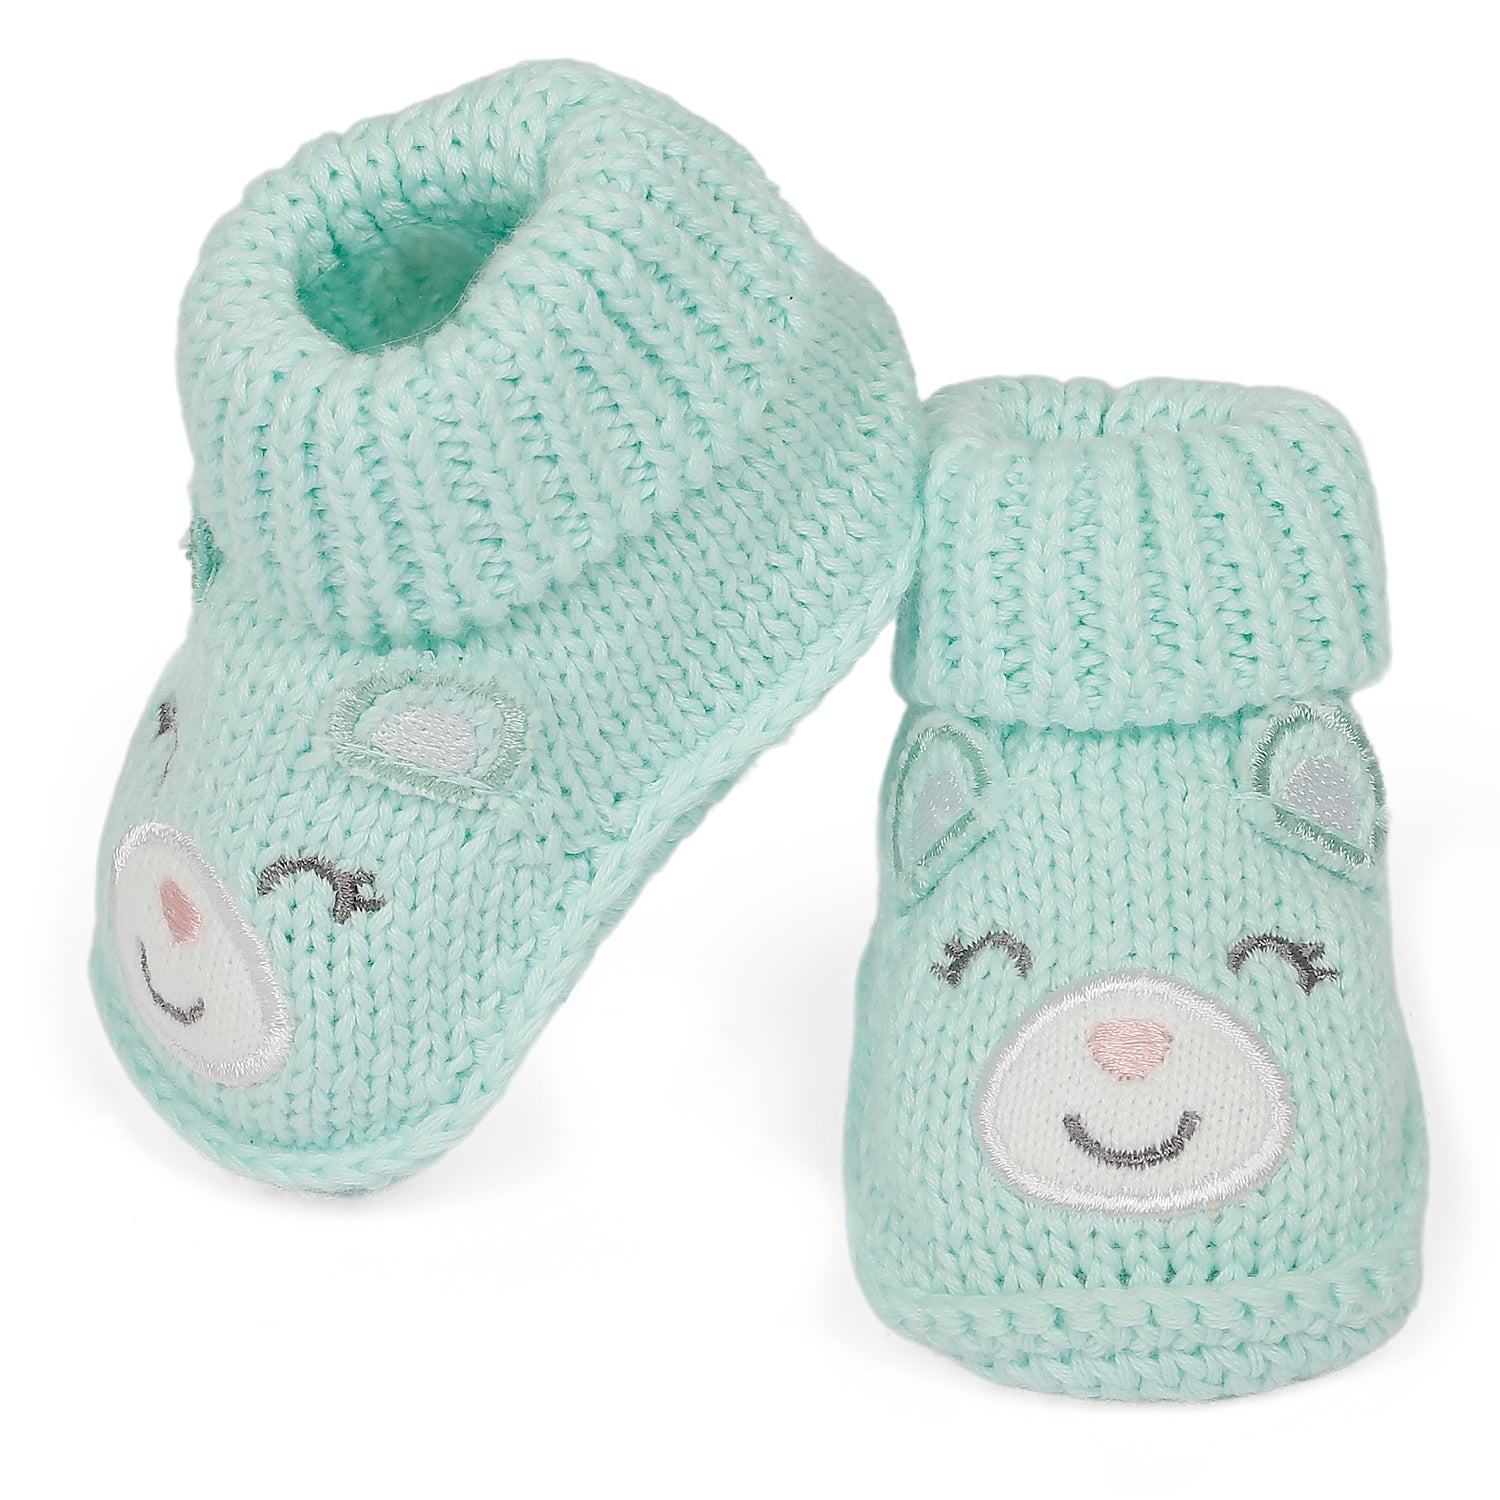 Blushing Newborn Crochet Socks Booties - Mint Green